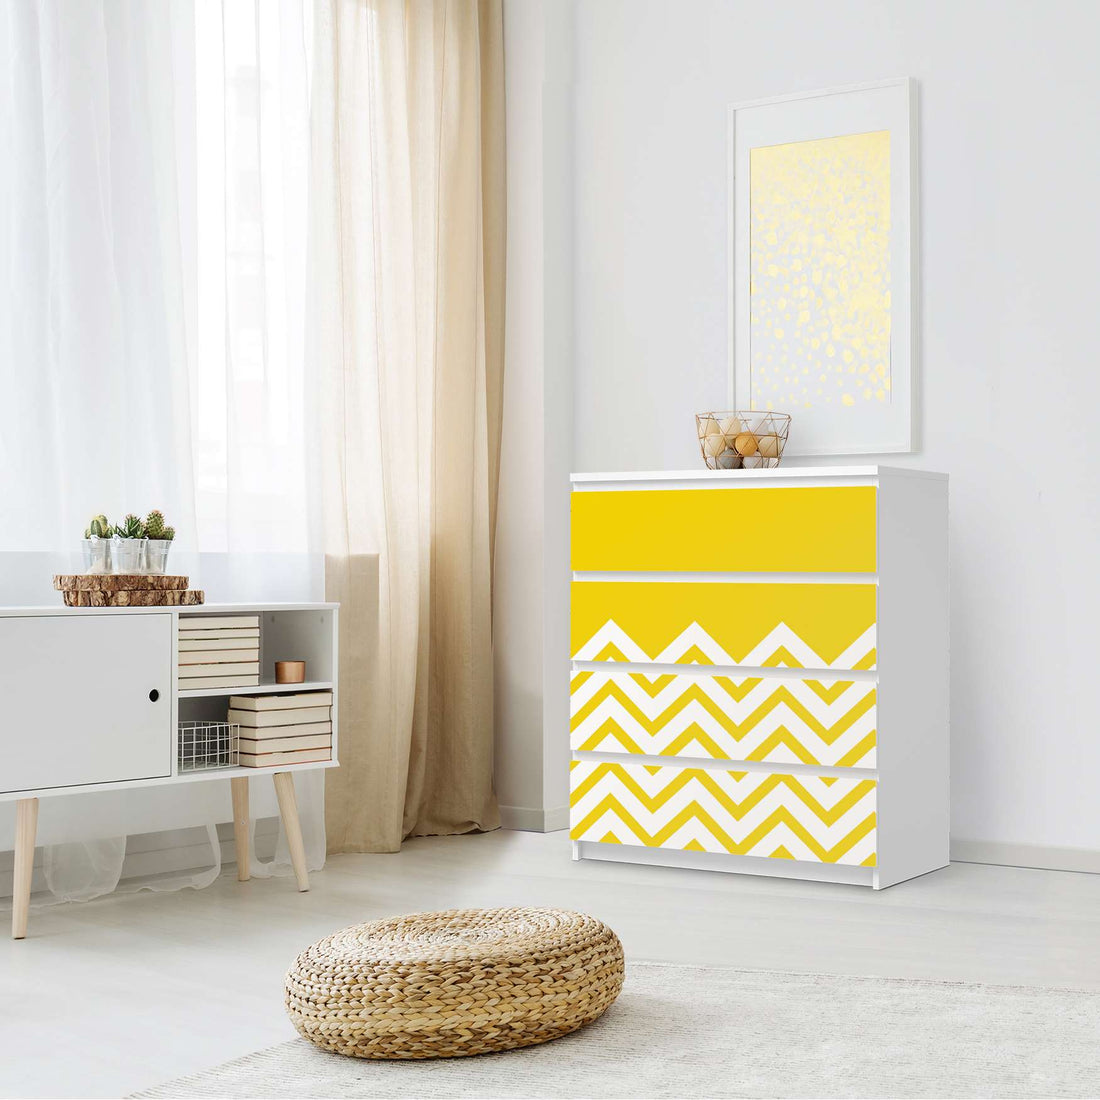 Folie für Möbel Gelbe Zacken - IKEA Malm Kommode 4 Schubladen - Schlafzimmer